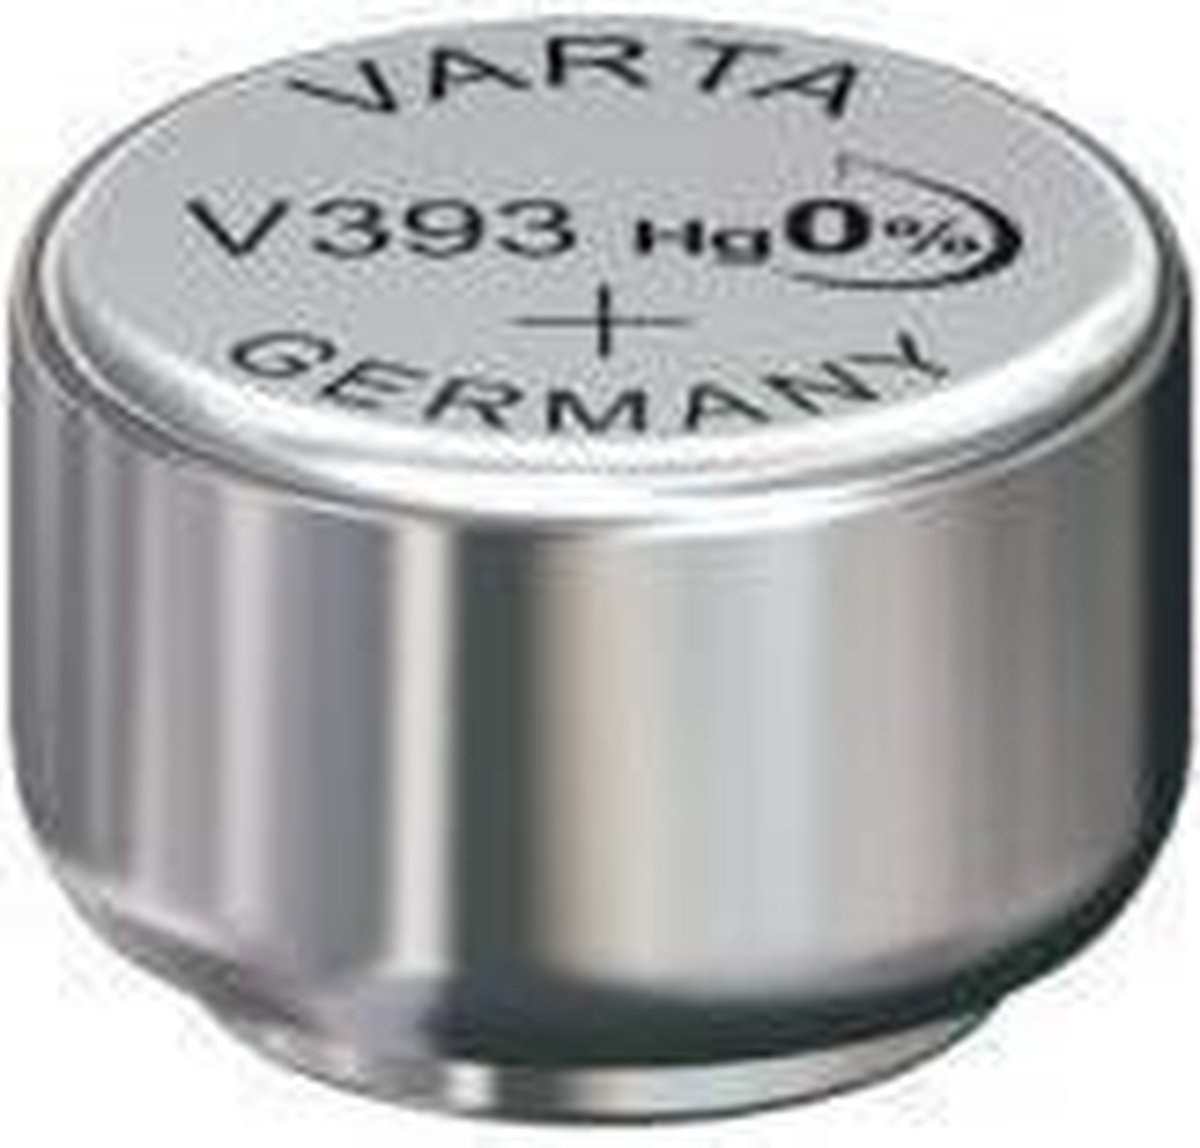 Varta horlogebatterij V393 zilveroxide